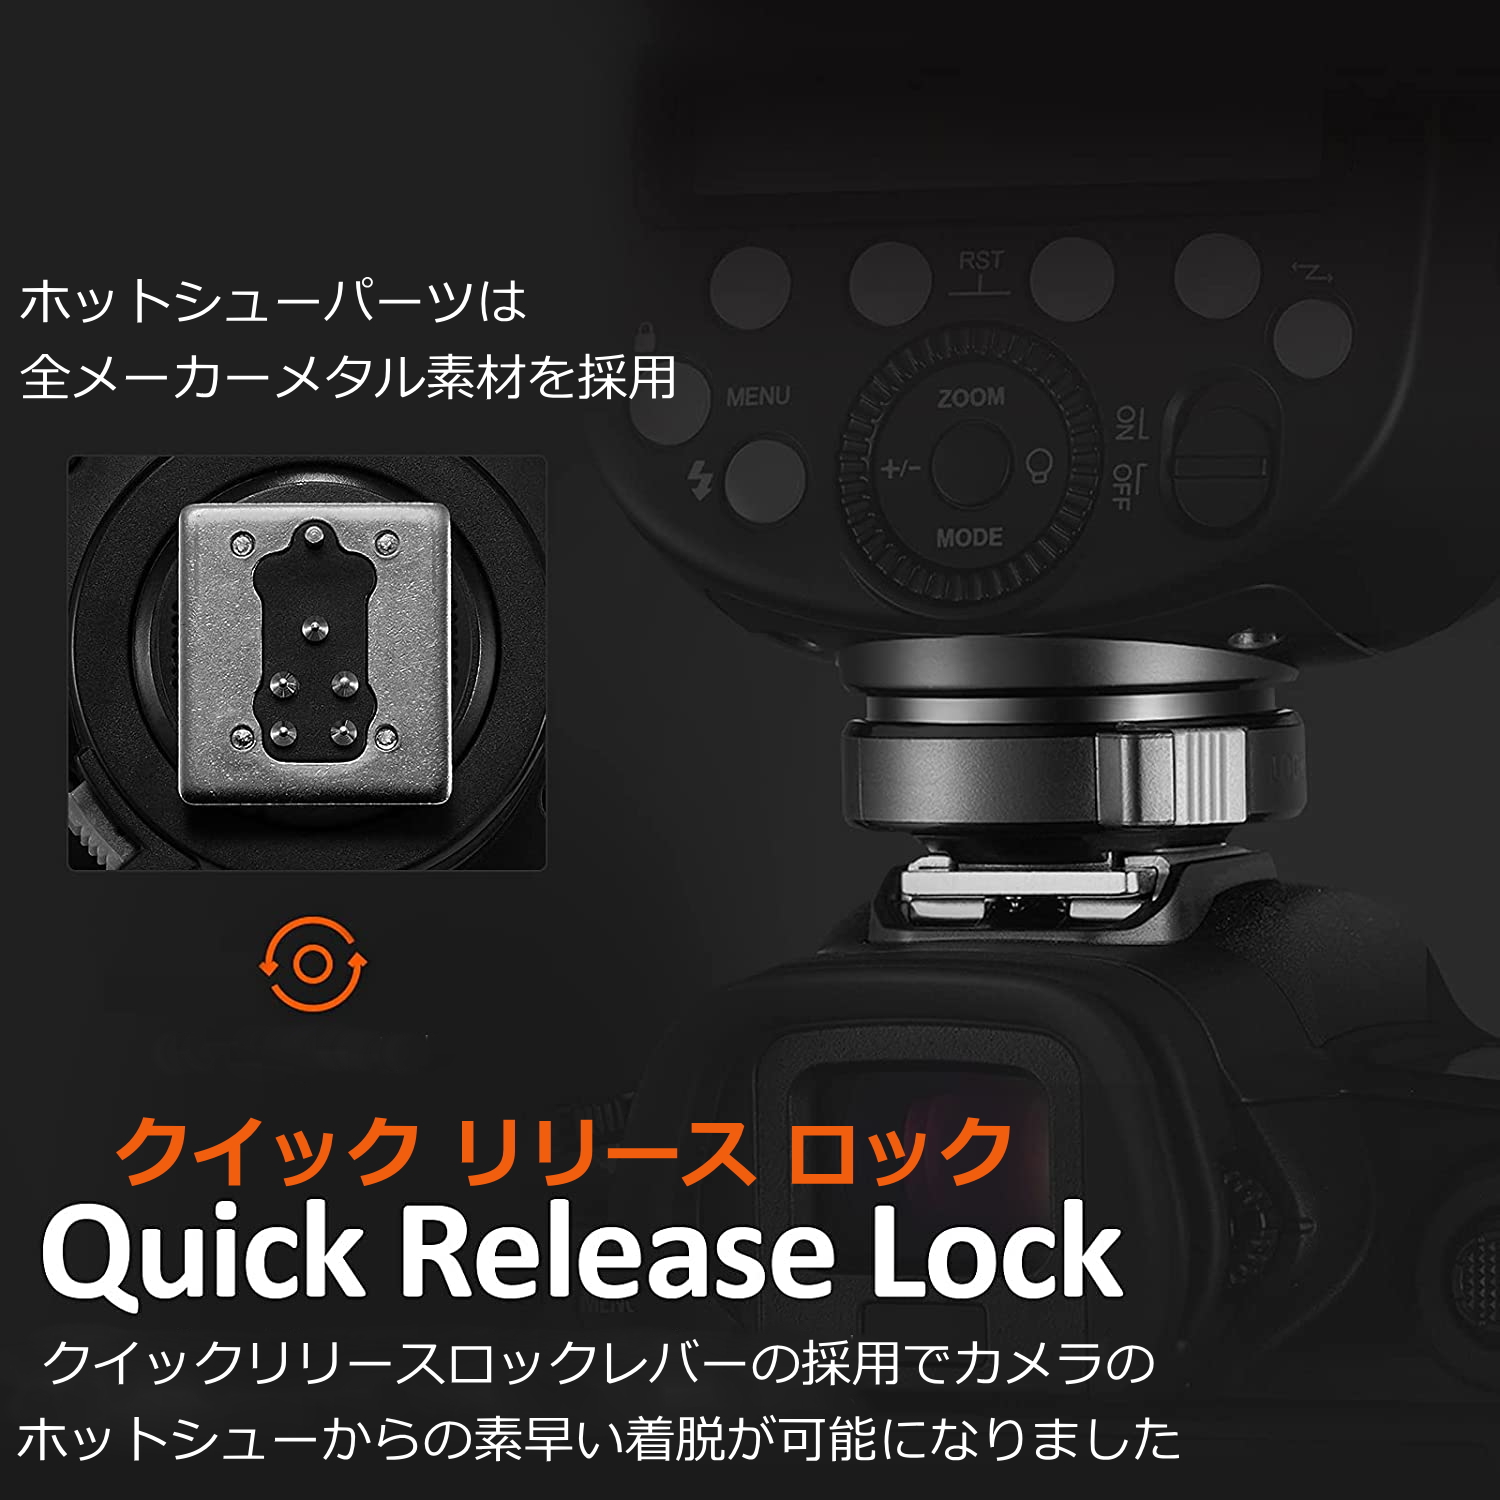 日本正規代理店品 GODOX V860III-C カメラフラッシュ 技適マーク付き